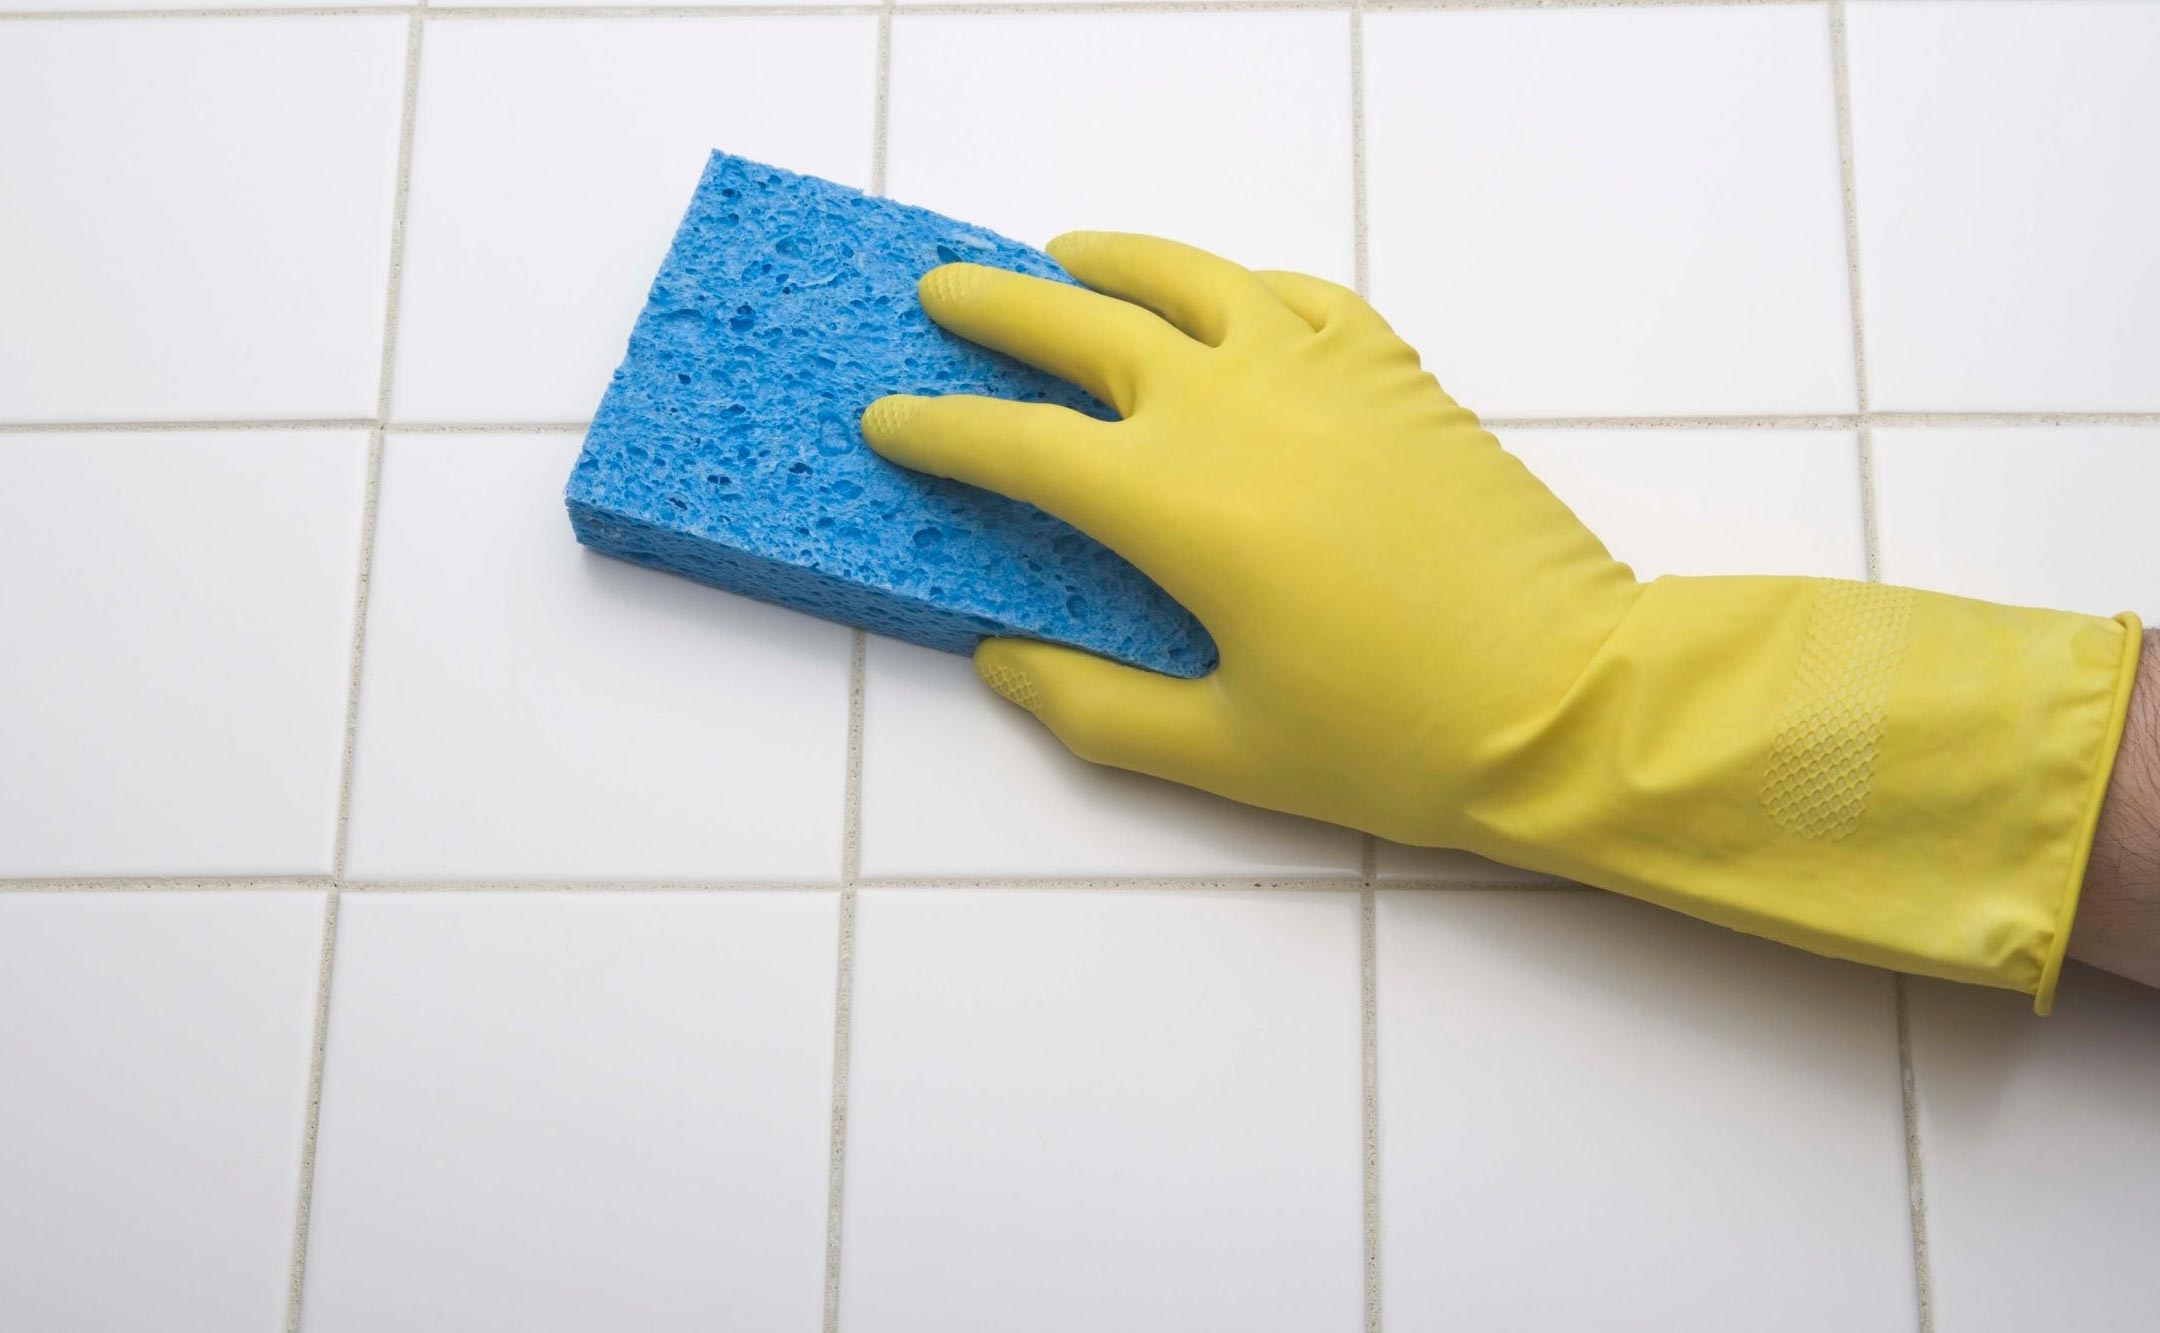 Як відмити плитку у ванній від нальоту в домашніх умовах і домашніми засобами? Чим відмити плитку у ванній від вапняного нальоту?